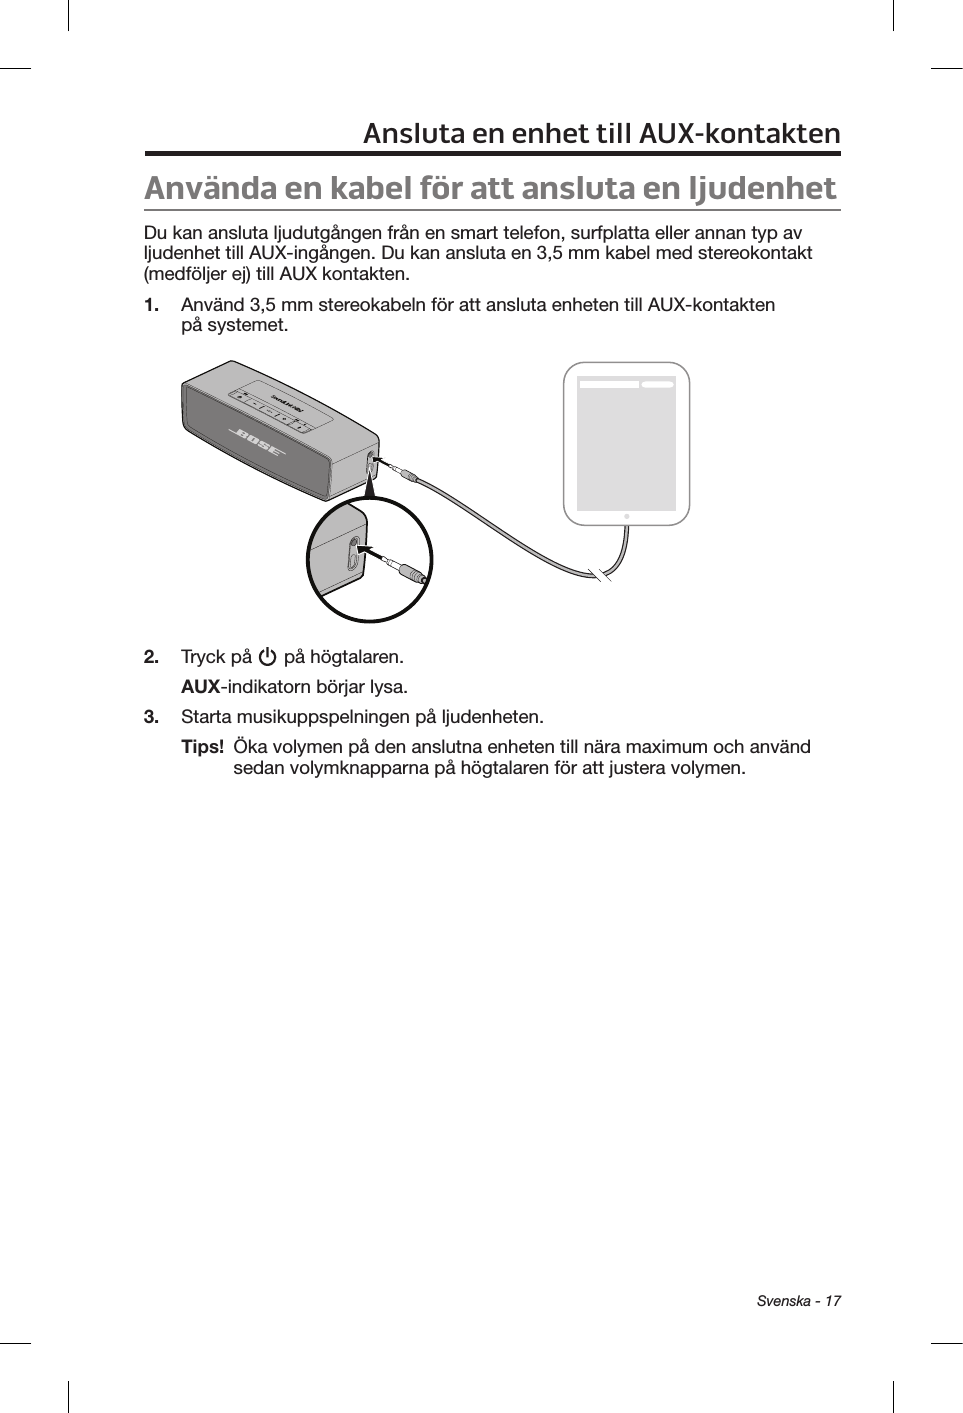  Svenska - 17Ansluta en enhet till AUX-kontaktenAnvända en kabel för att ansluta en ljudenhetDu kan ansluta ljudutgången från en smart telefon, surfplatta eller annan typ av ljudenhet till AUX-ingången. Du kan ansluta en 3,5 mm kabel med stereokontakt (medföljer ej) till AUX kontakten.1.  Använd 3,5 mm stereokabeln för att ansluta enheten till AUX-kontakten på systemet.2.  Tryck på   på högtalaren.AUX-indikatorn börjar lysa.3.  Starta musikuppspelningen på ljudenheten.Tips!   Öka volymen på den anslutna enheten till nära maximum och använd sedan volymknapparna på högtalaren för att justera volymen.